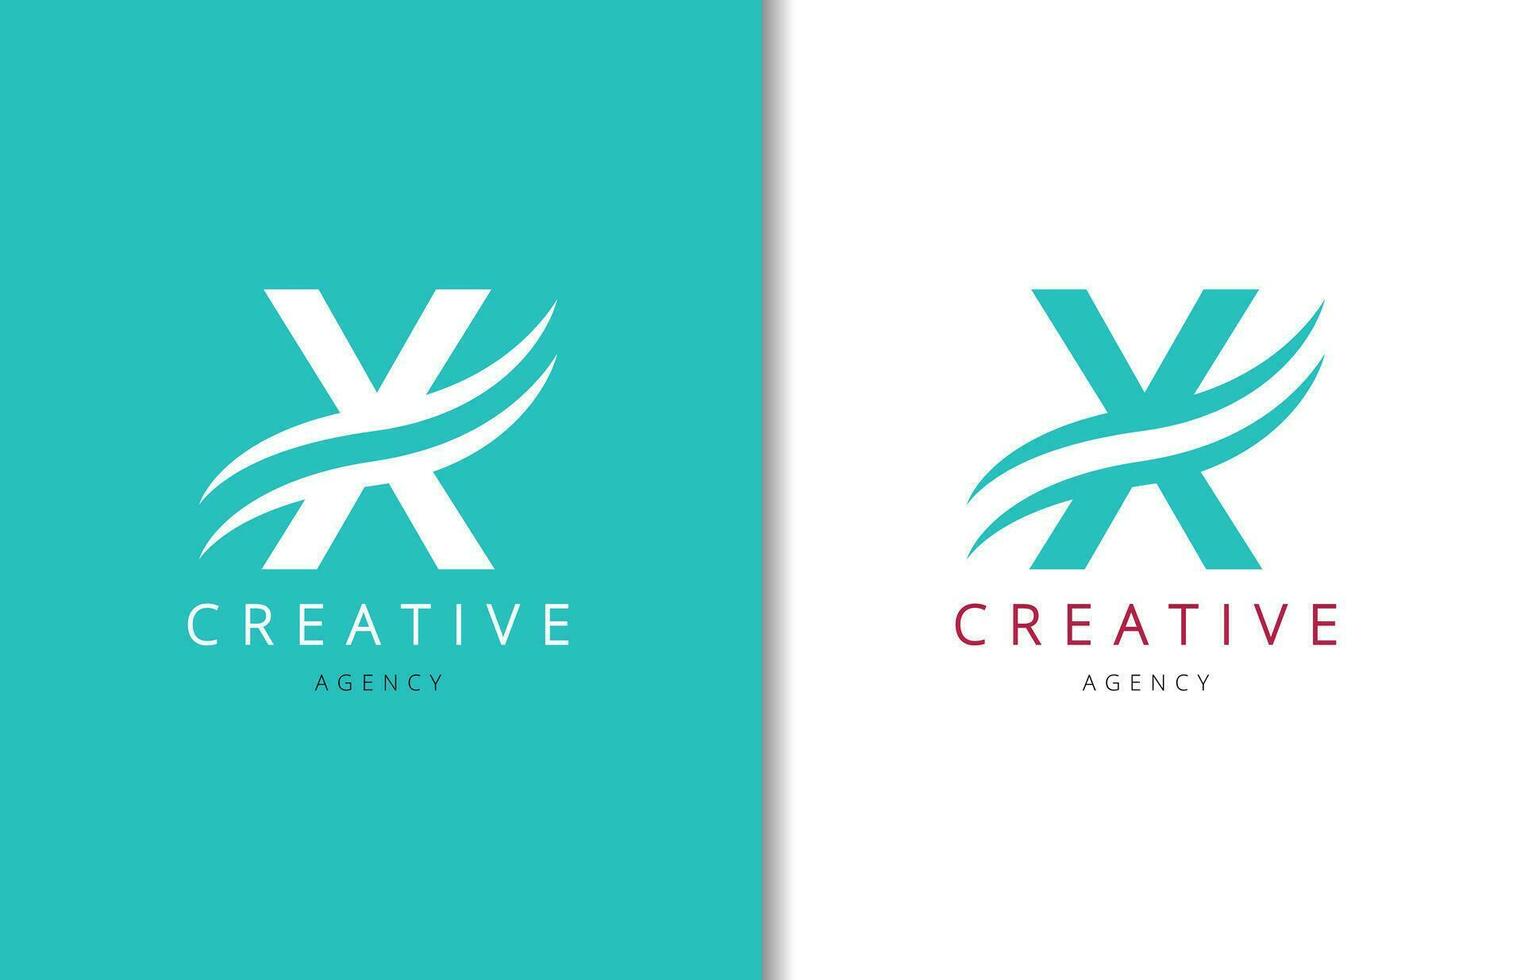 X brief logo ontwerp met achtergrond en creatief bedrijf logo. modern belettering mode ontwerp. vector illustratie